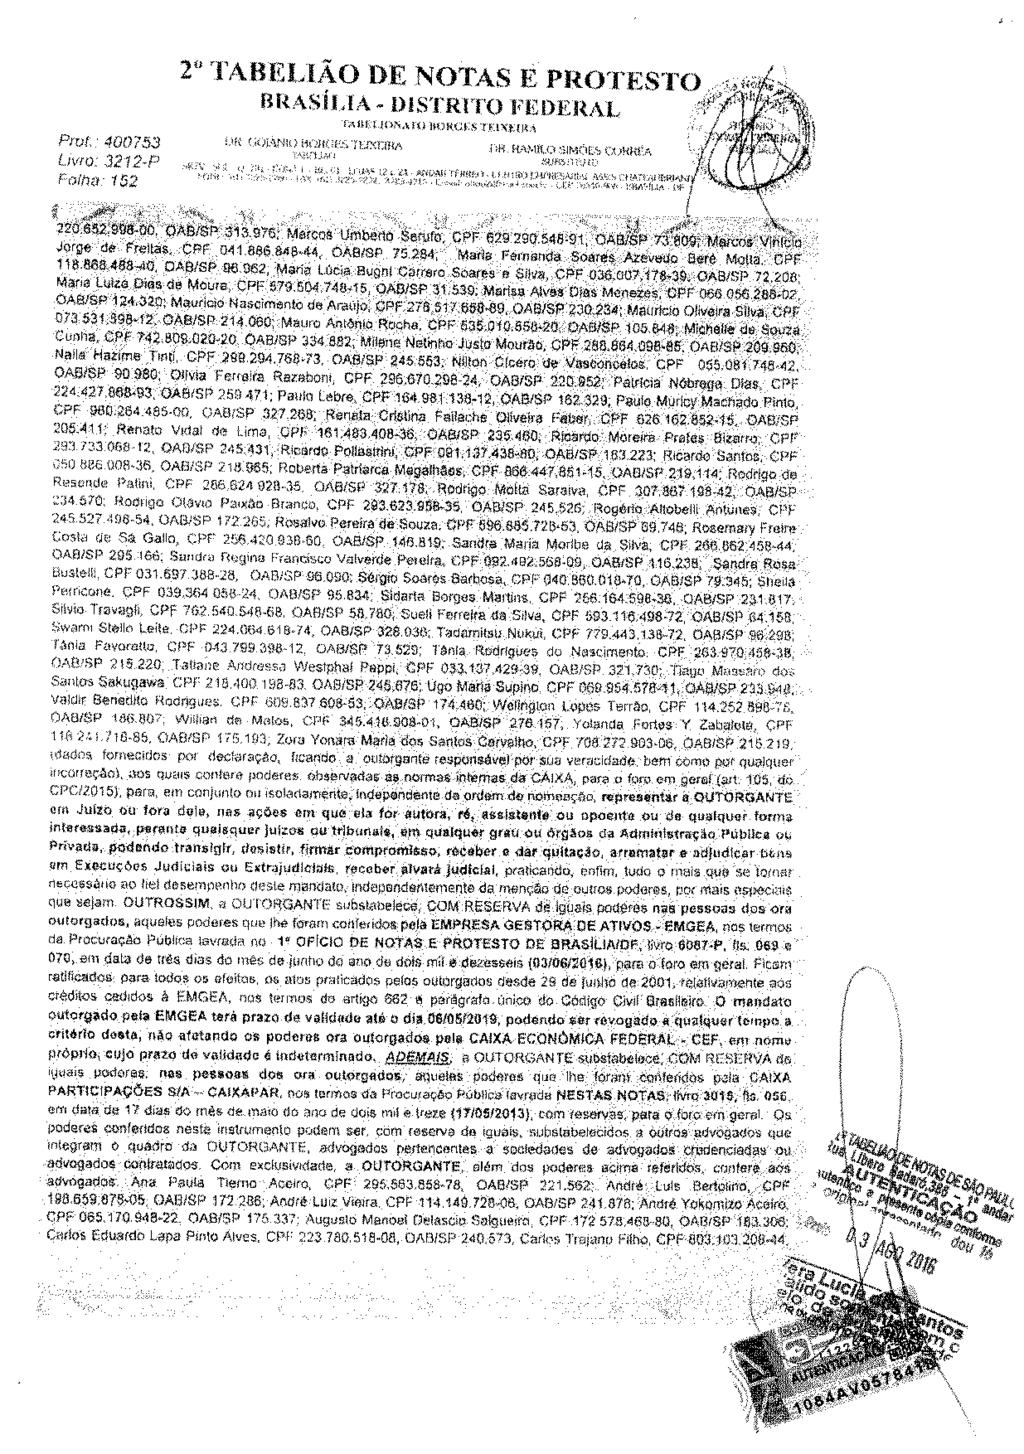 fls. 222 Este documento é cópia do original, assinado digitalmente por DANIEL ZORZENON NIERO e Tribunal de Justica do Estado de Sao Paulo, protocolado em 07/11/2018 às 11:13, sob o número